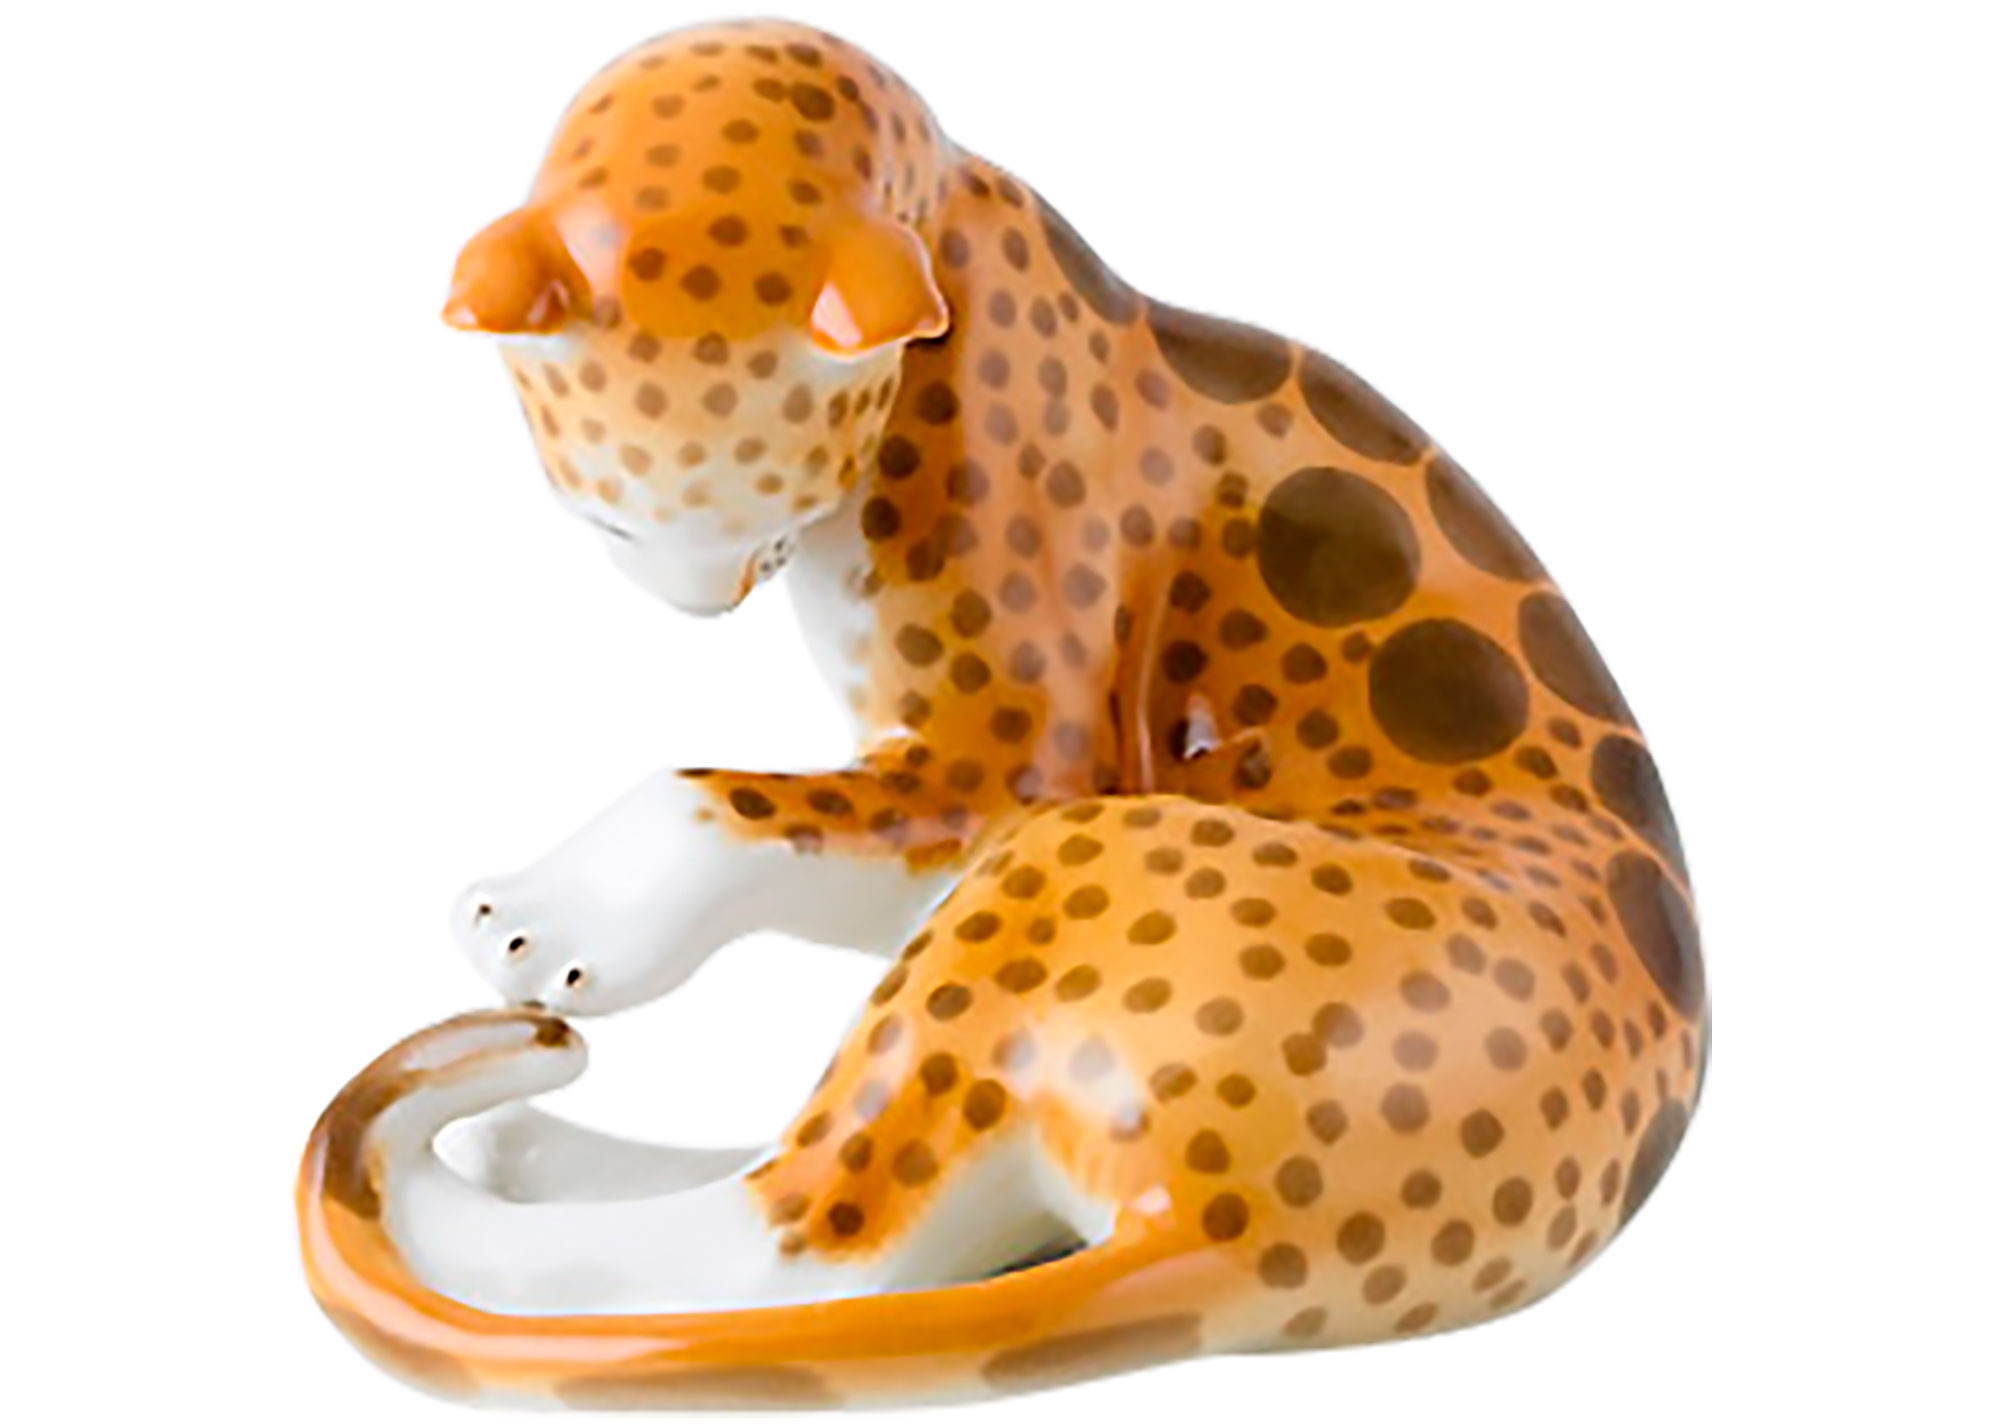 Buy Porcelain Leopard  Figurine at GoldenCockerel.com